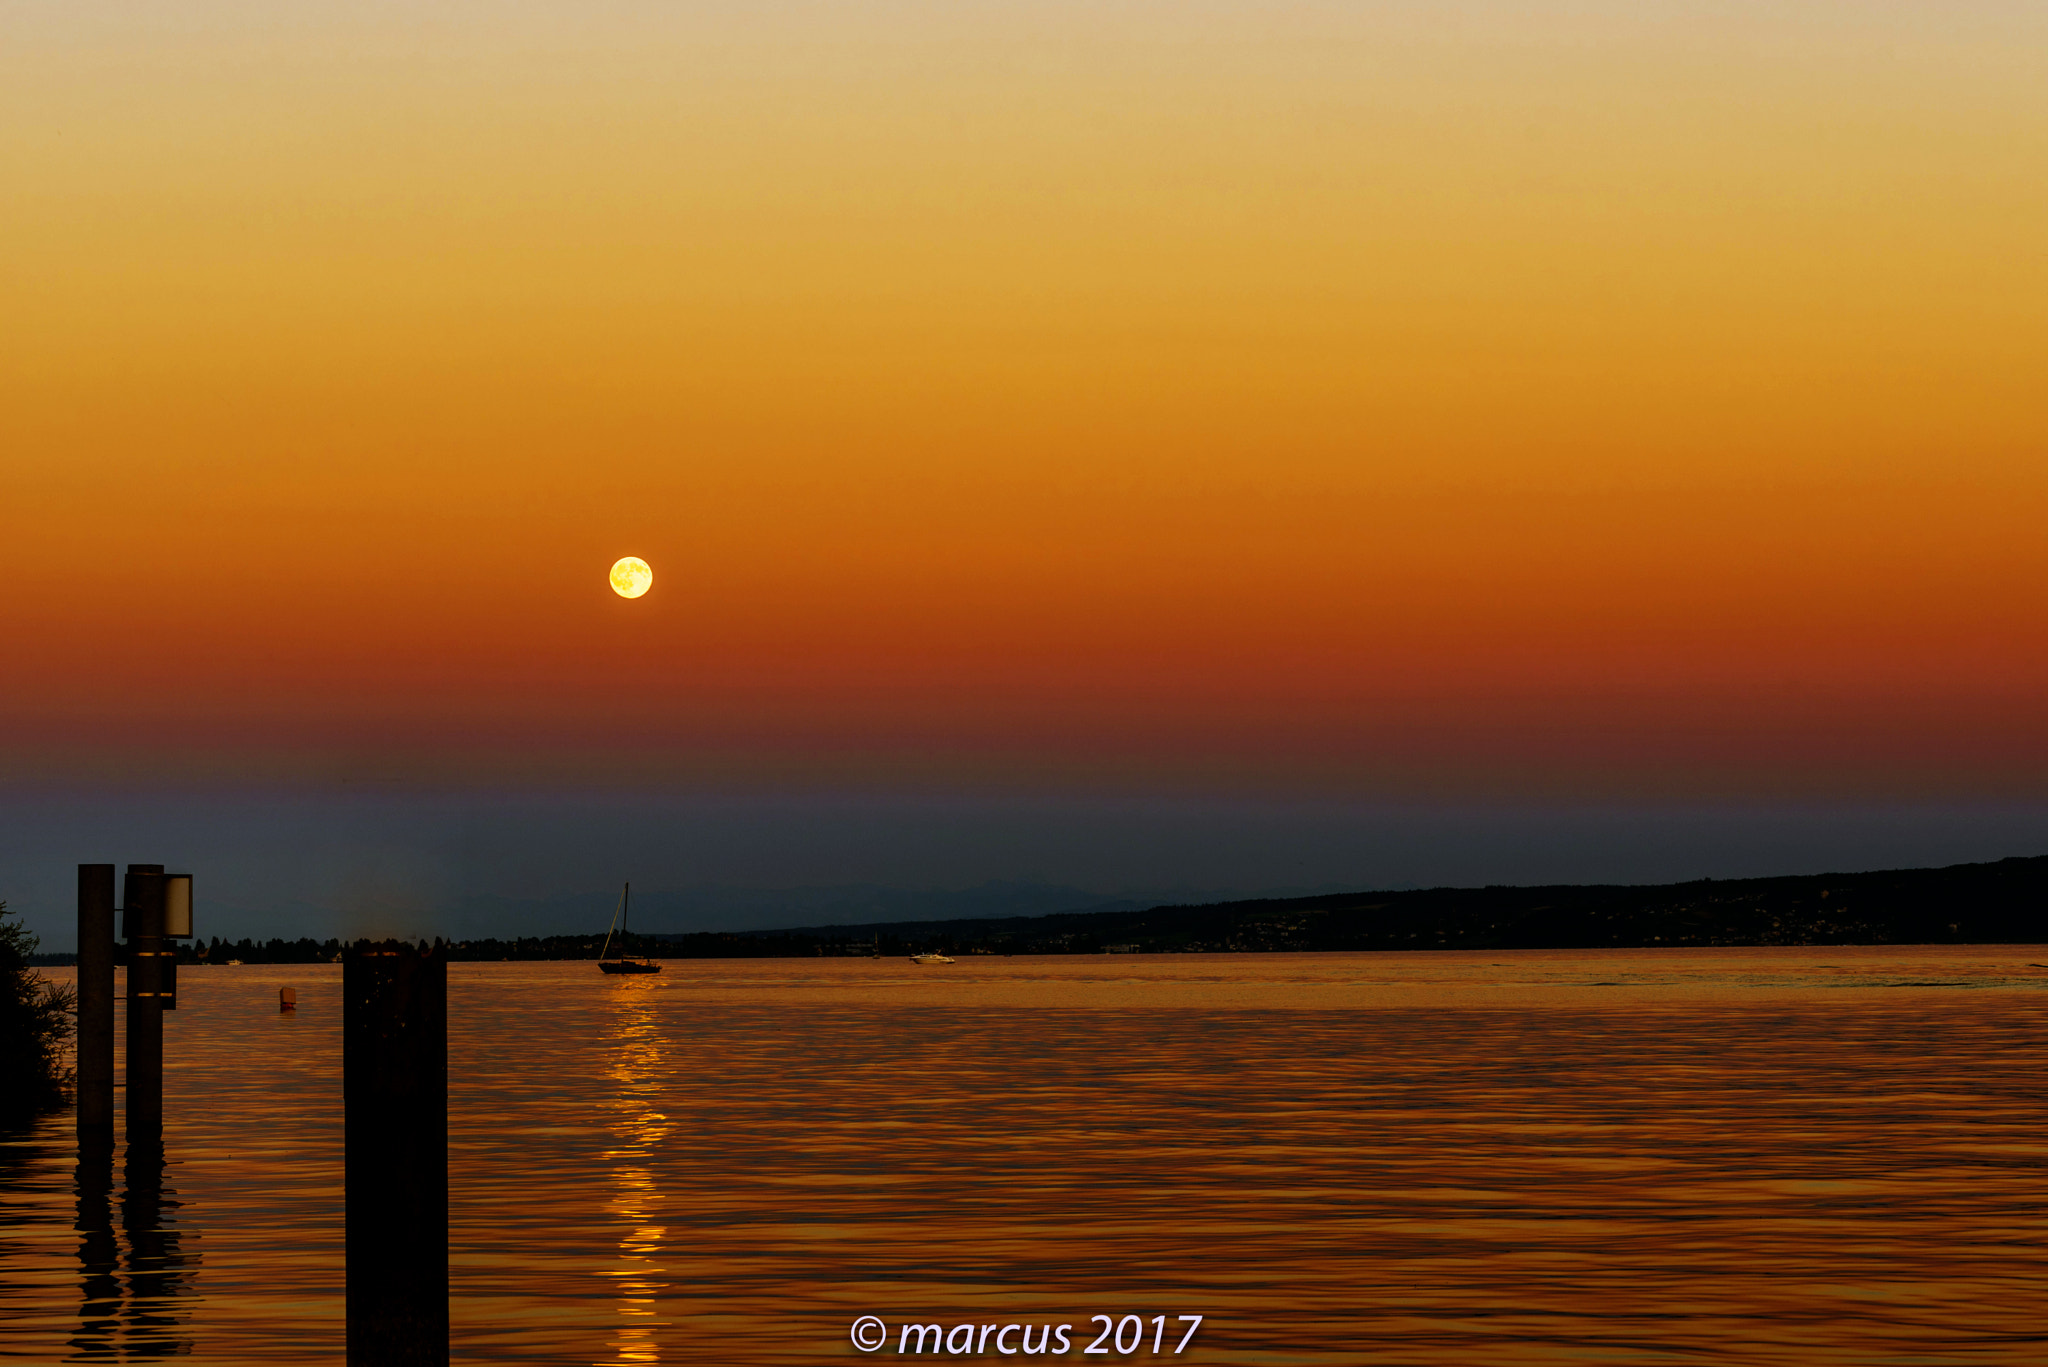 Nikon D750 sample photo. Sunset at a lake photography